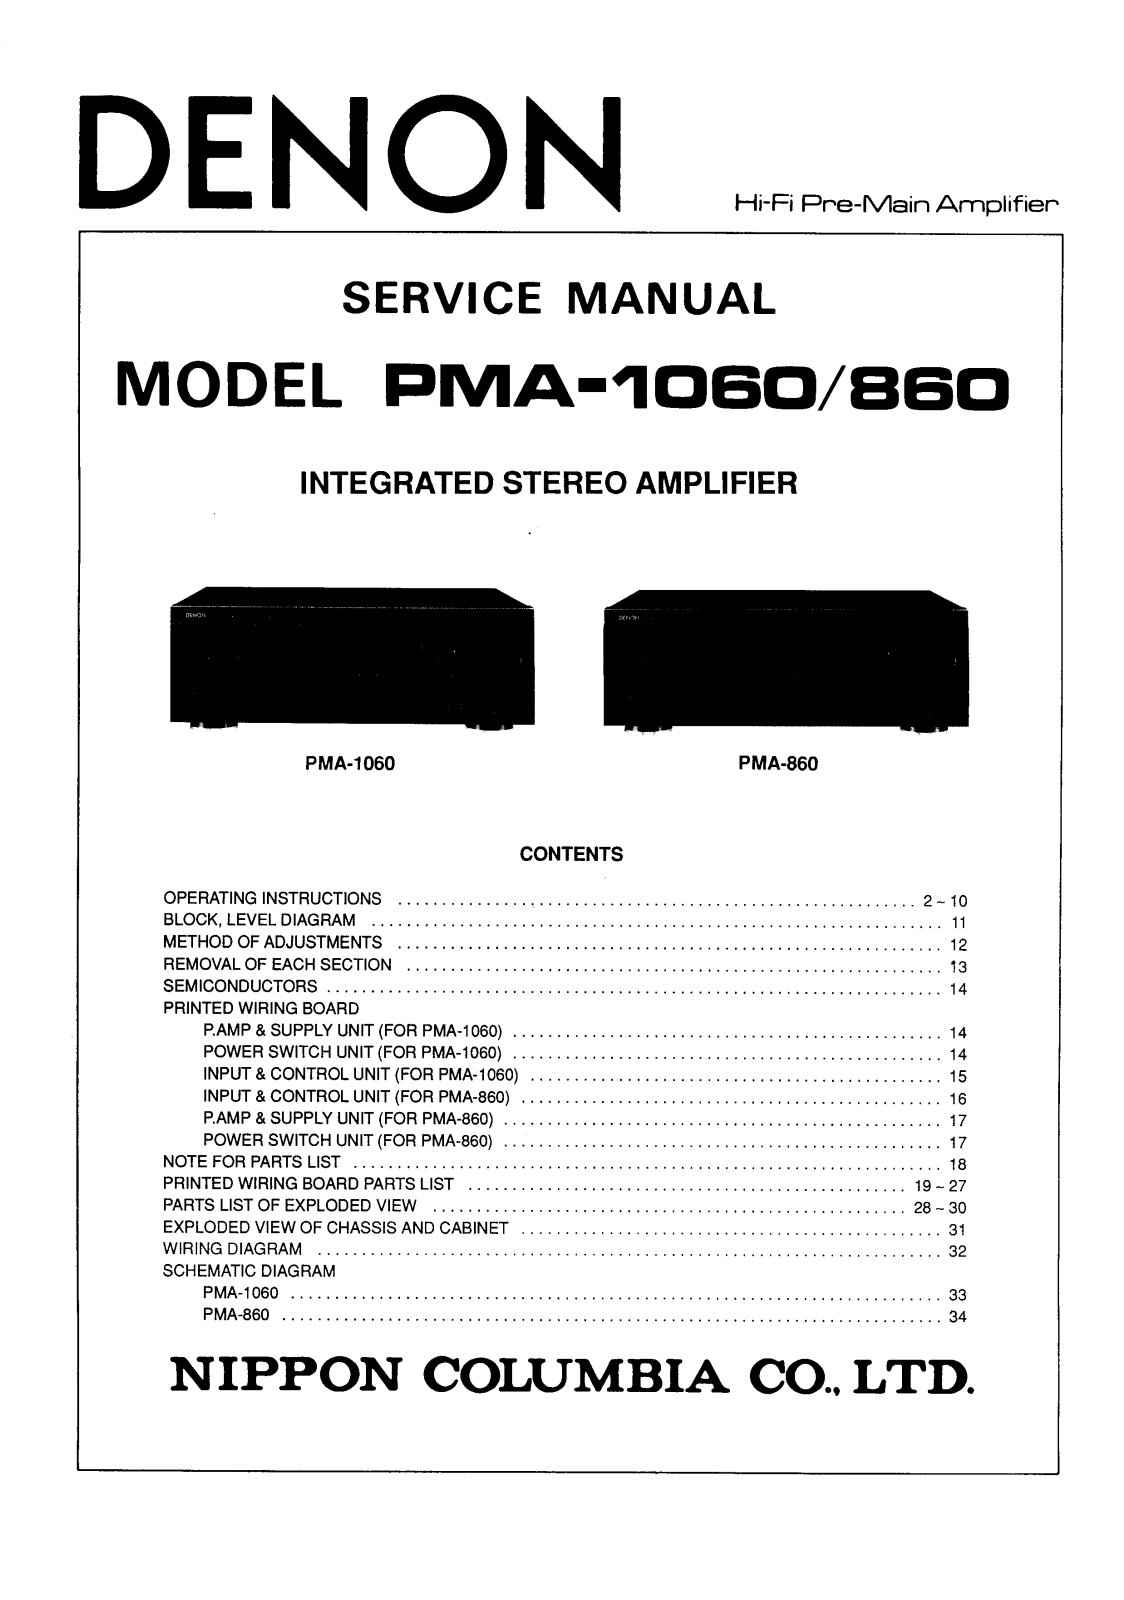 Denon PMA-1060 Service Manual